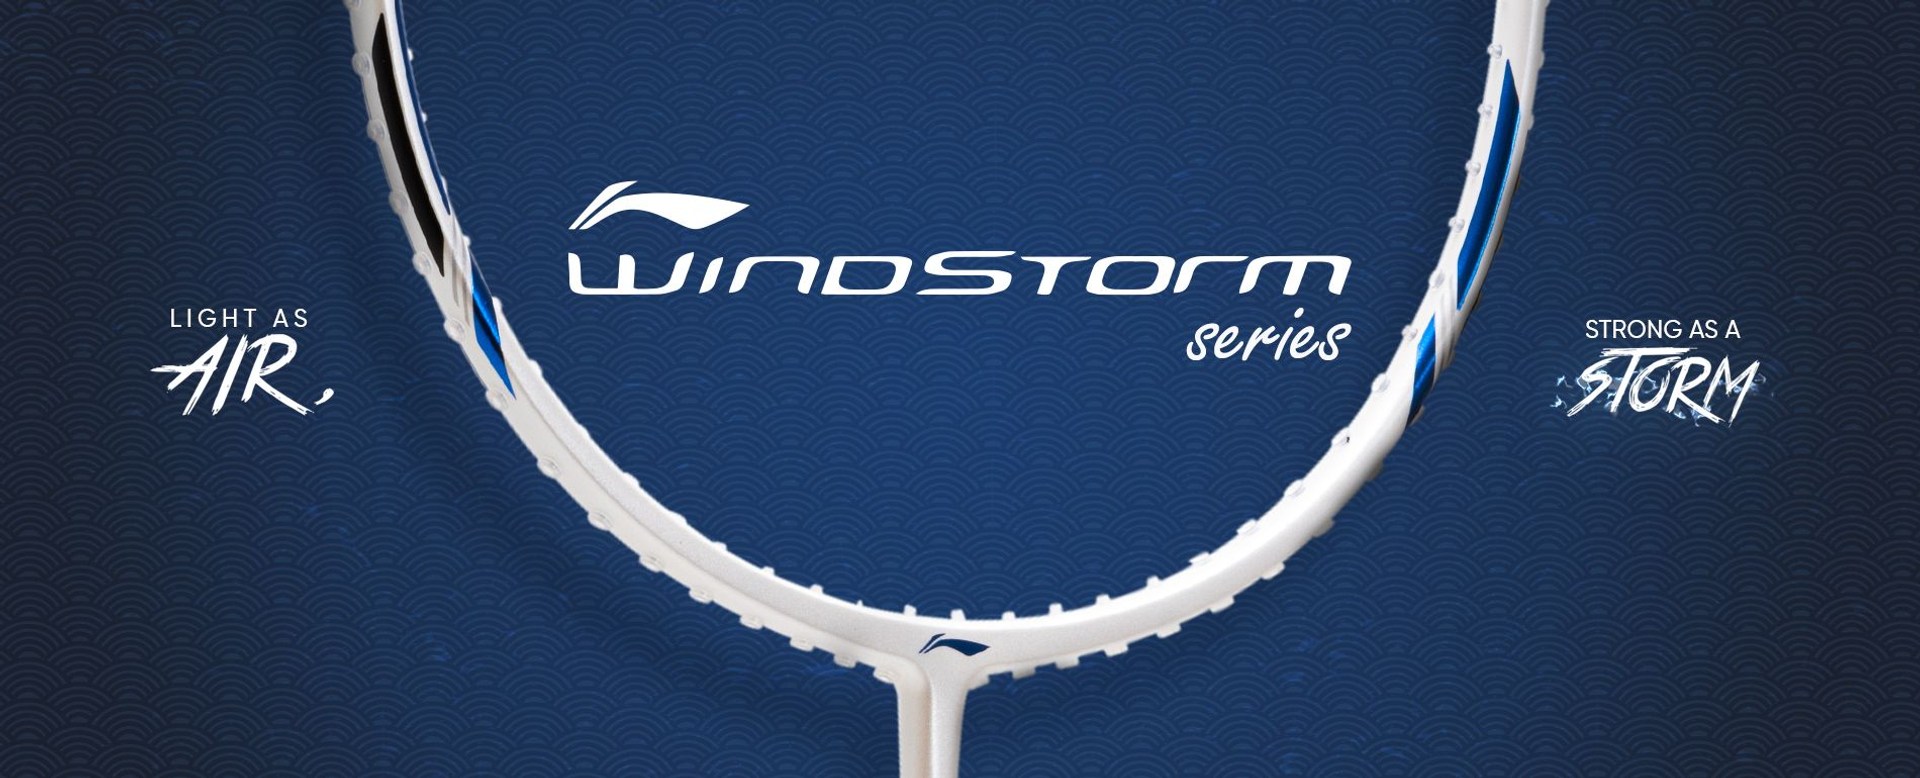 Windstorm Series